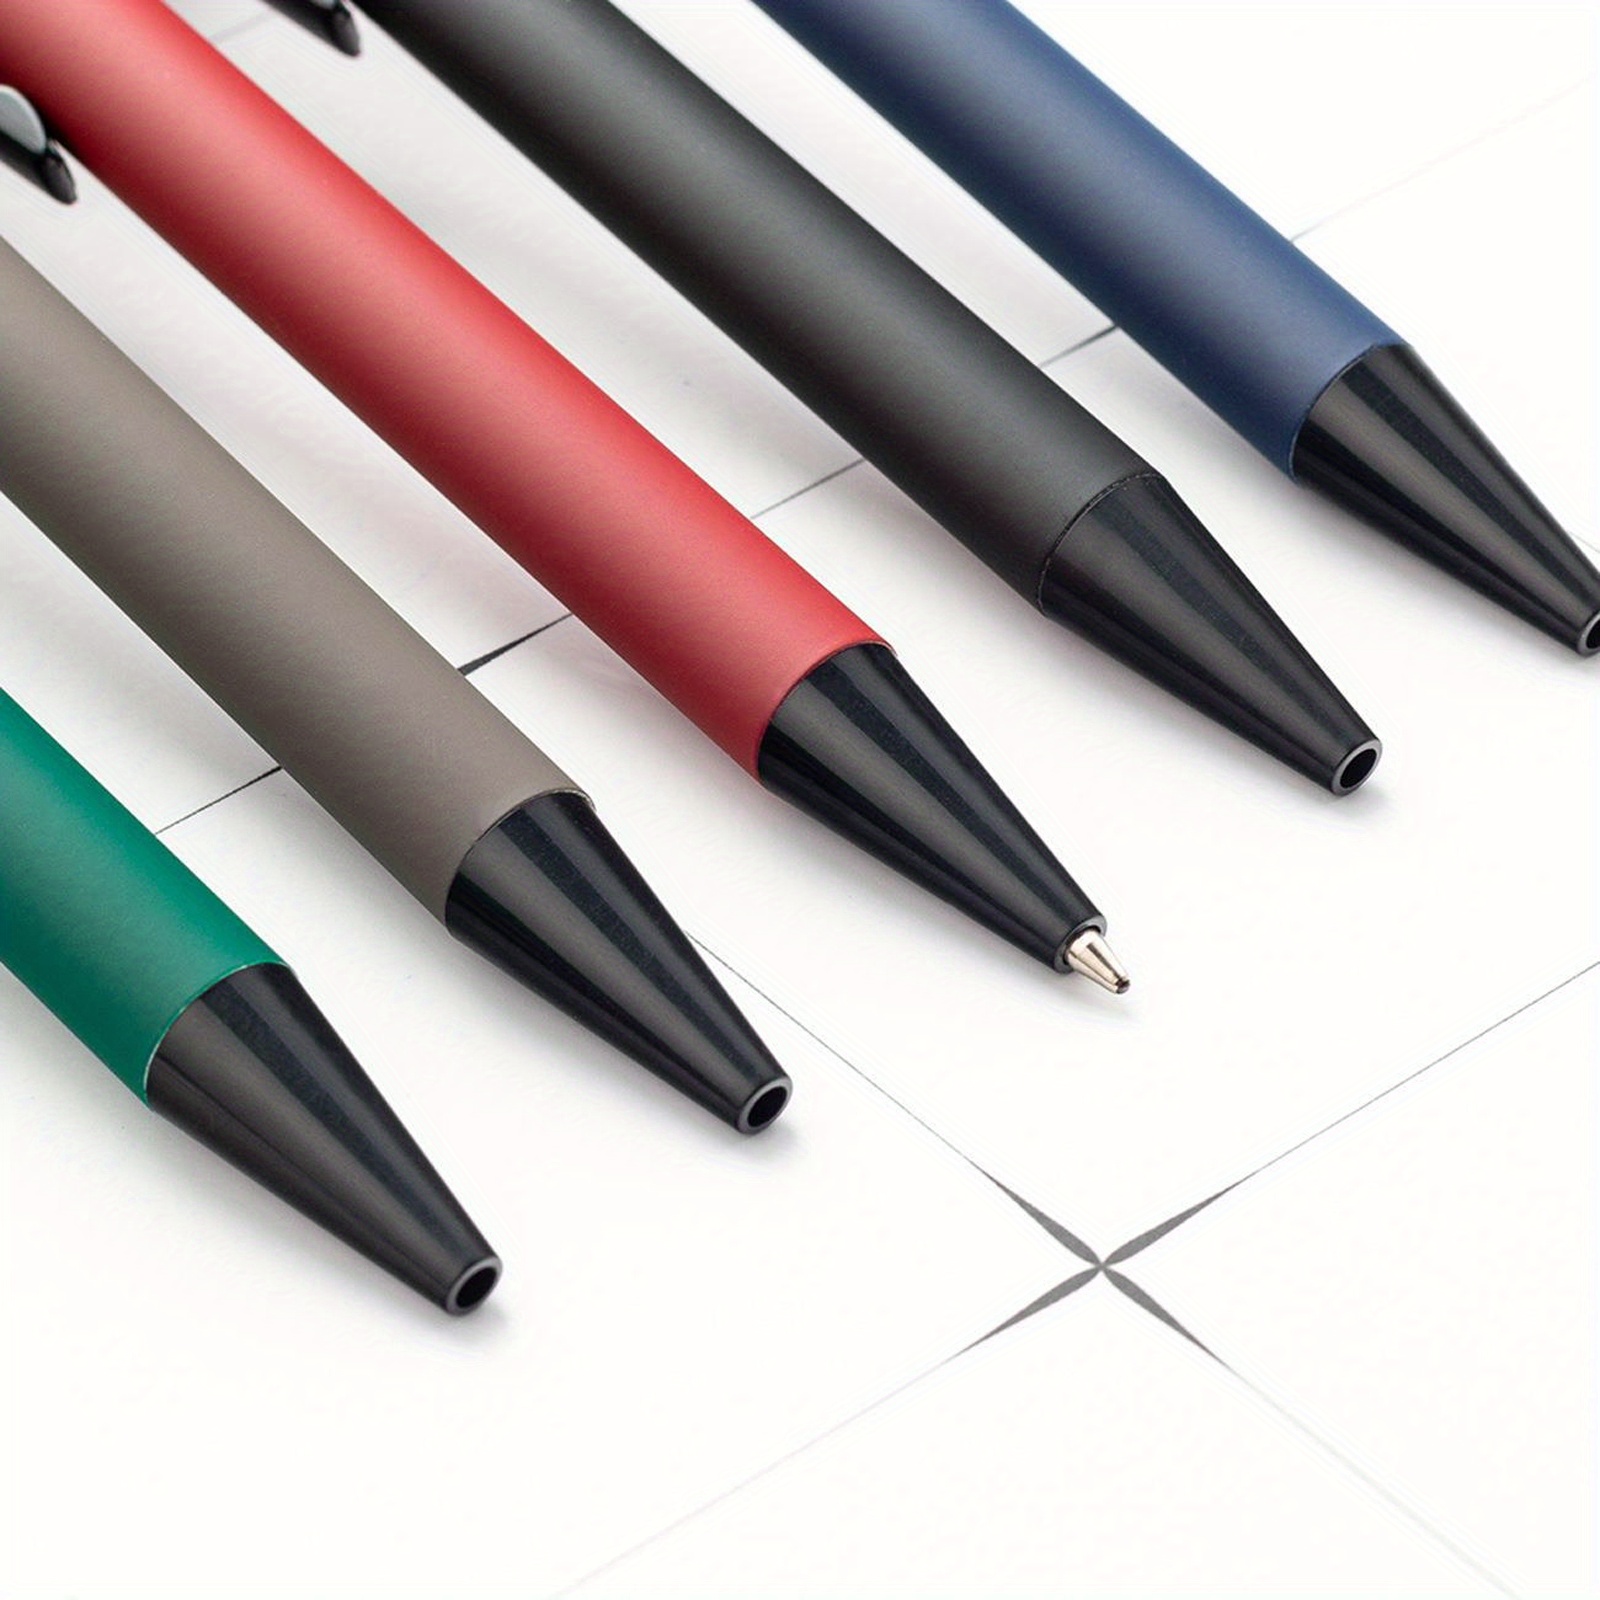 Le 5 migliori penne a sfera e le 5 migliori penne roller qualità prezzo:  l'idea regalo che non passa mai di moda!